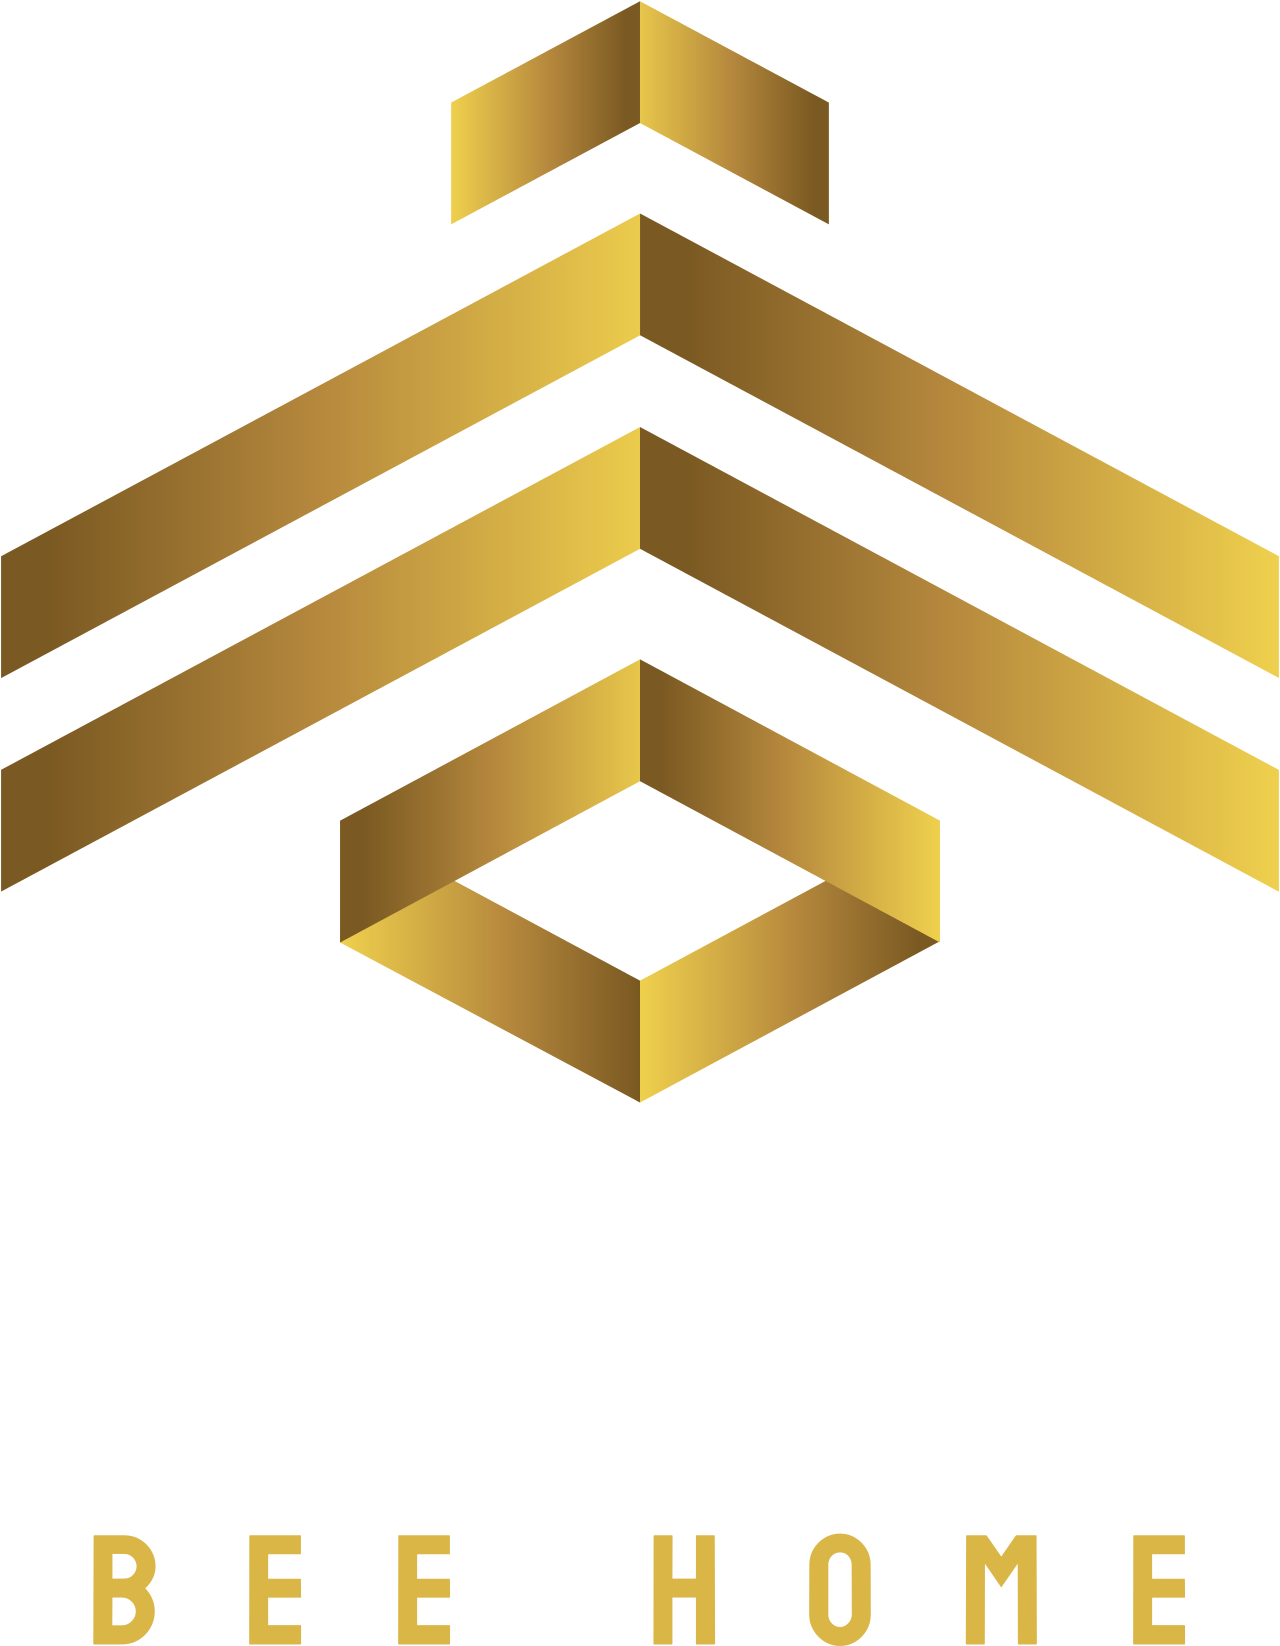 EVIMDE's logo